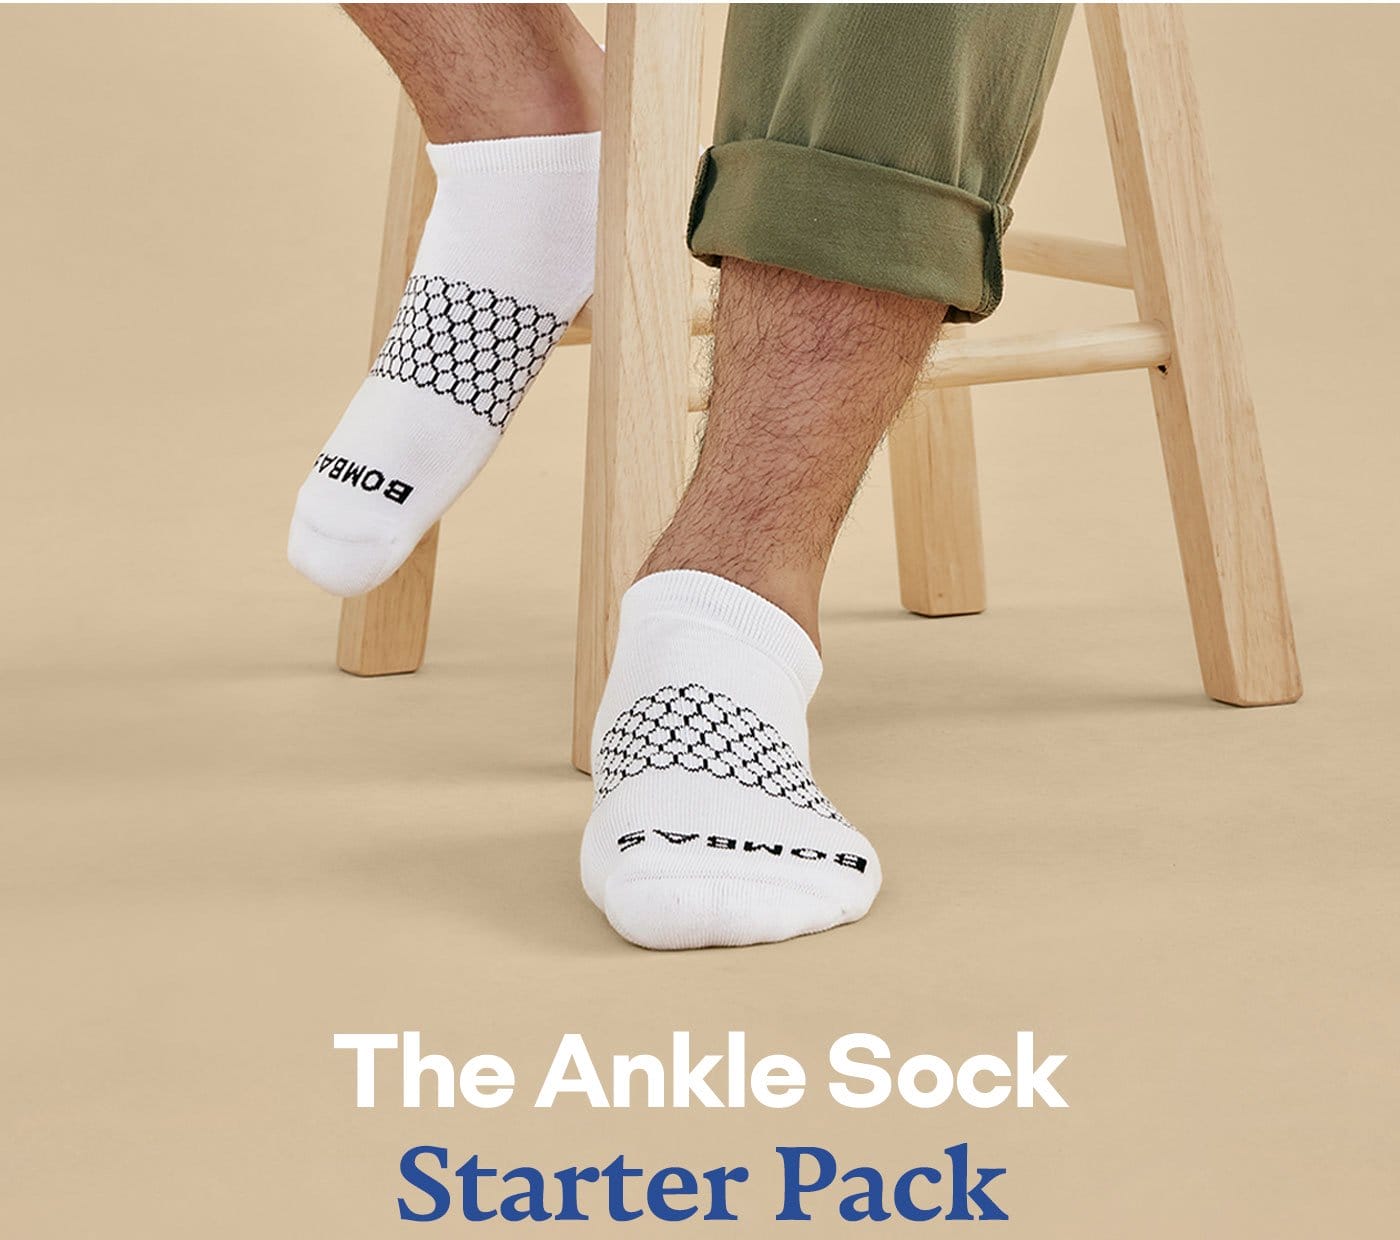 The Ankle Sock Starter Pack